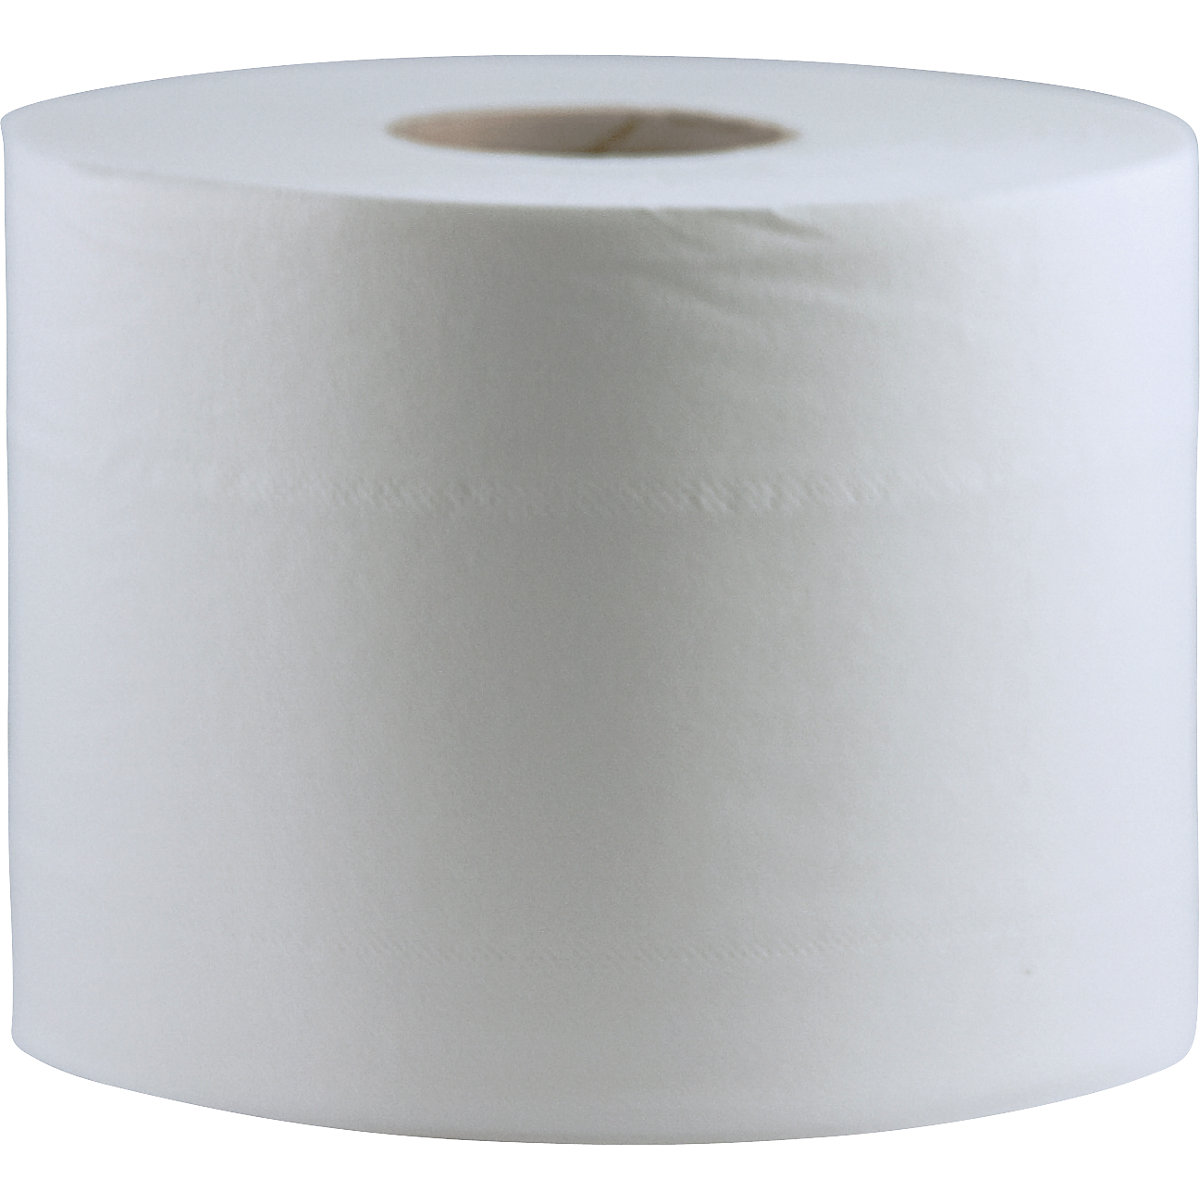 Toaletni papir – CWS